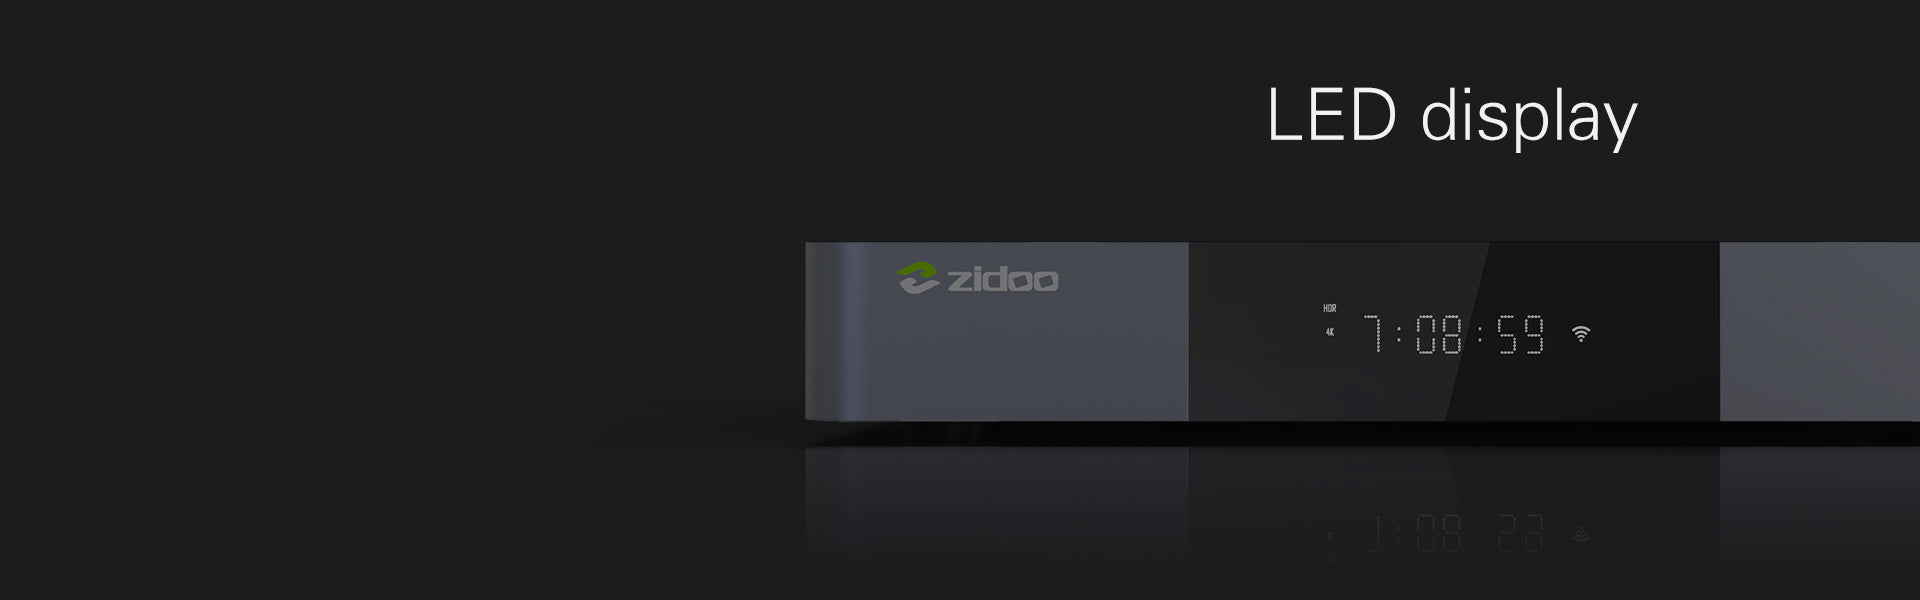 Zidoo Z9X Pro 4K Media Player